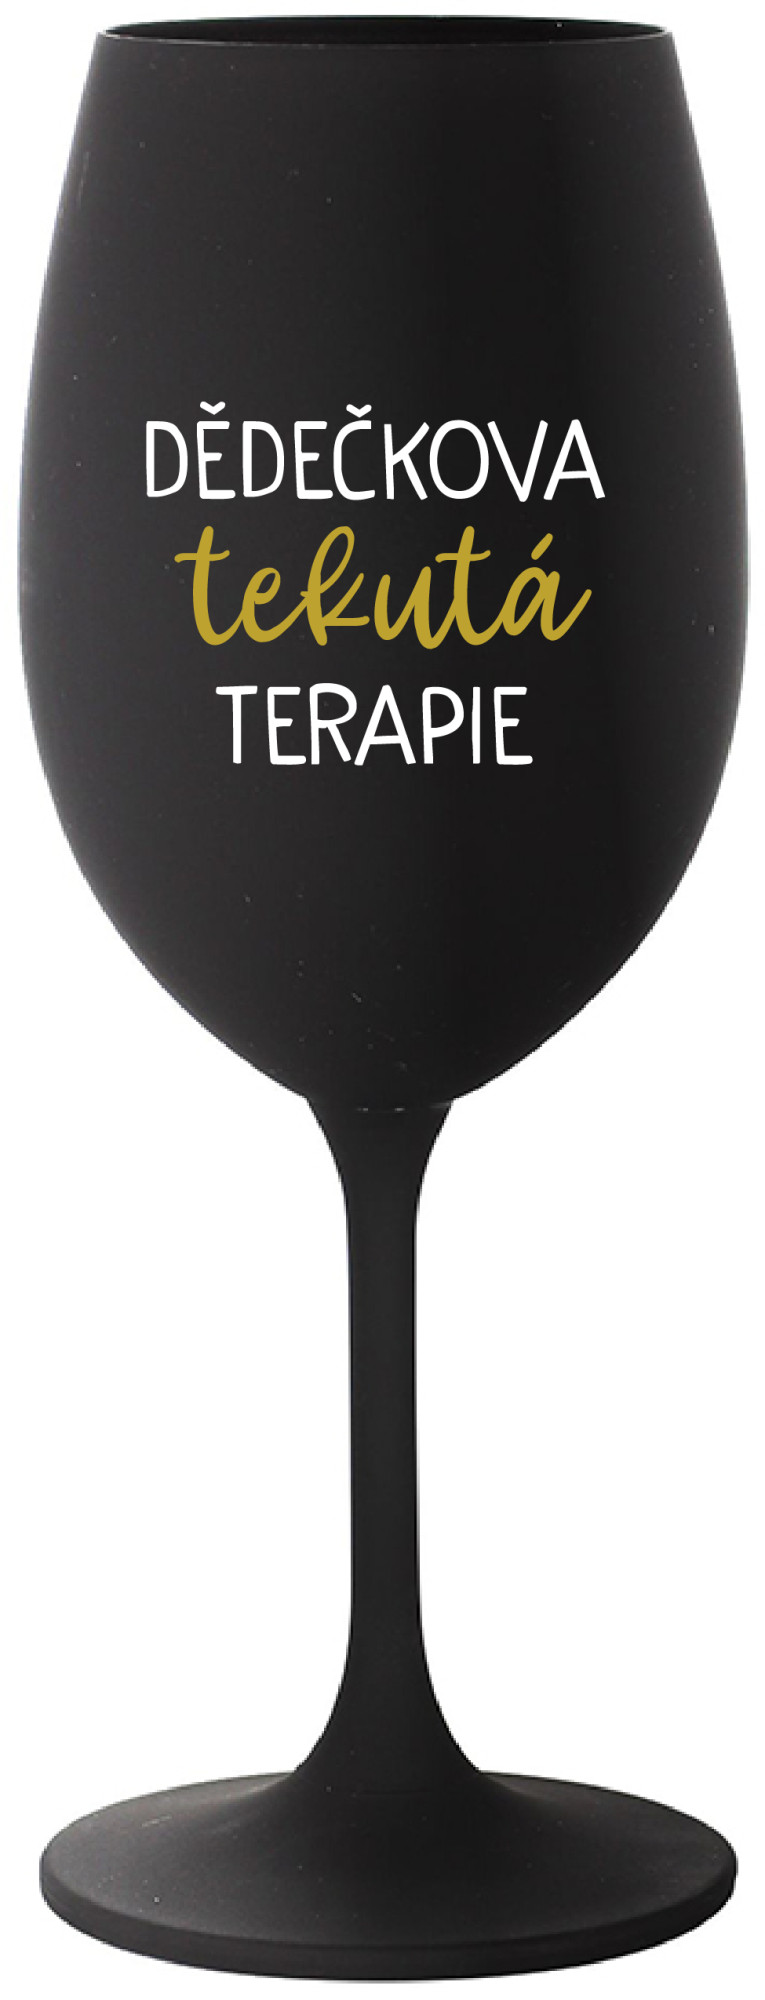 DĚDEČKOVA TEKUTÁ TERAPIE - černá sklenice na víno 350 ml